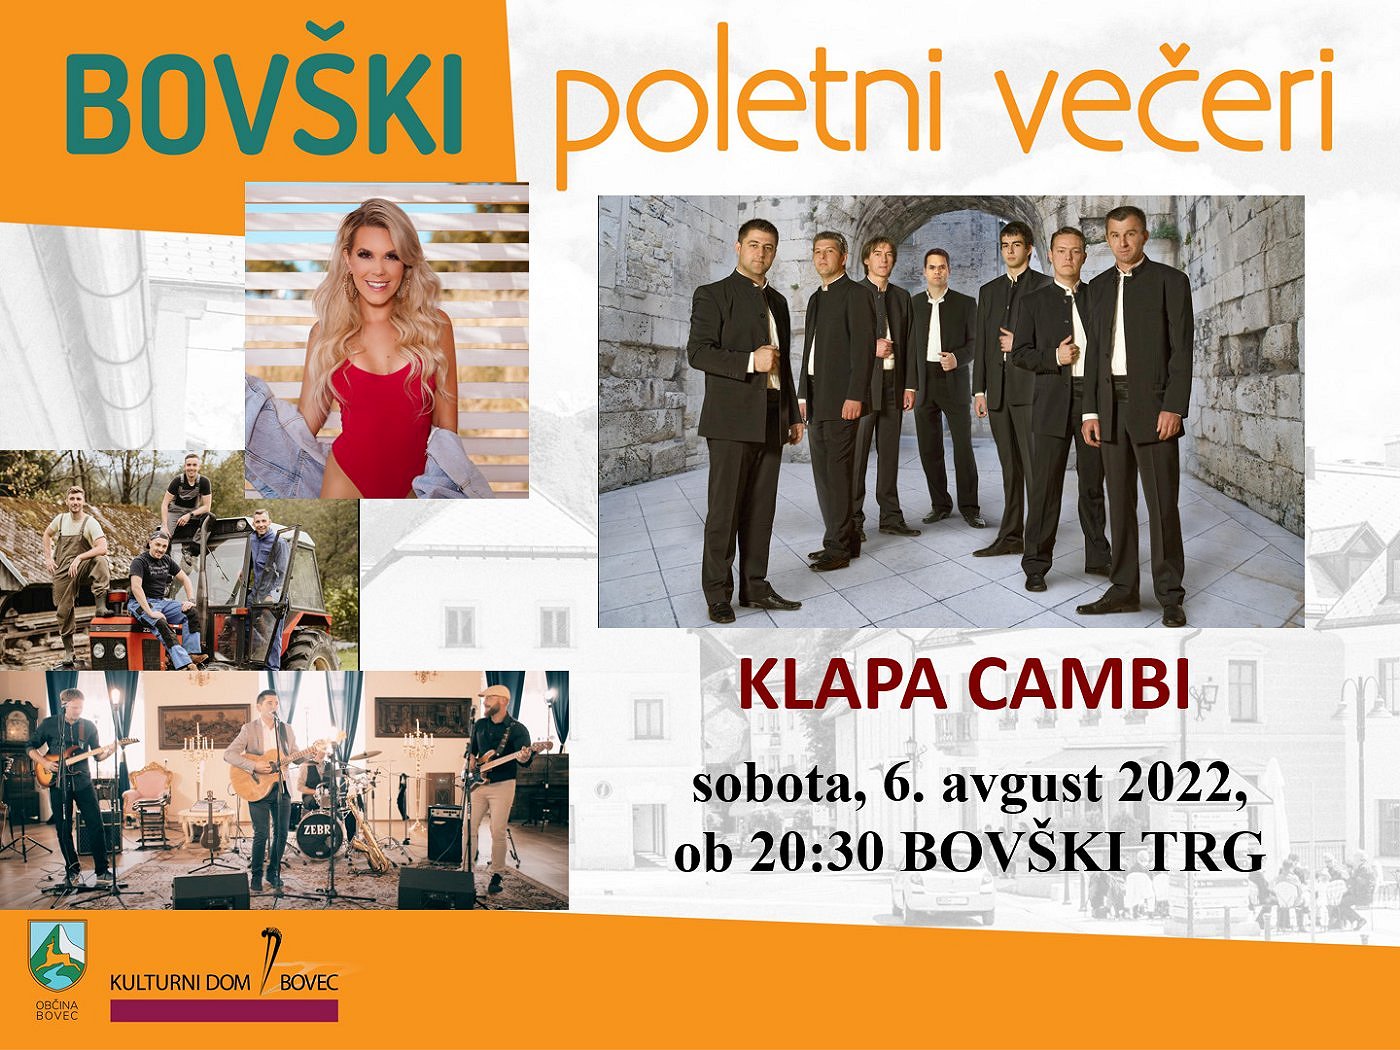 Bovški poletni večeri 2022 - Klapa Cambi